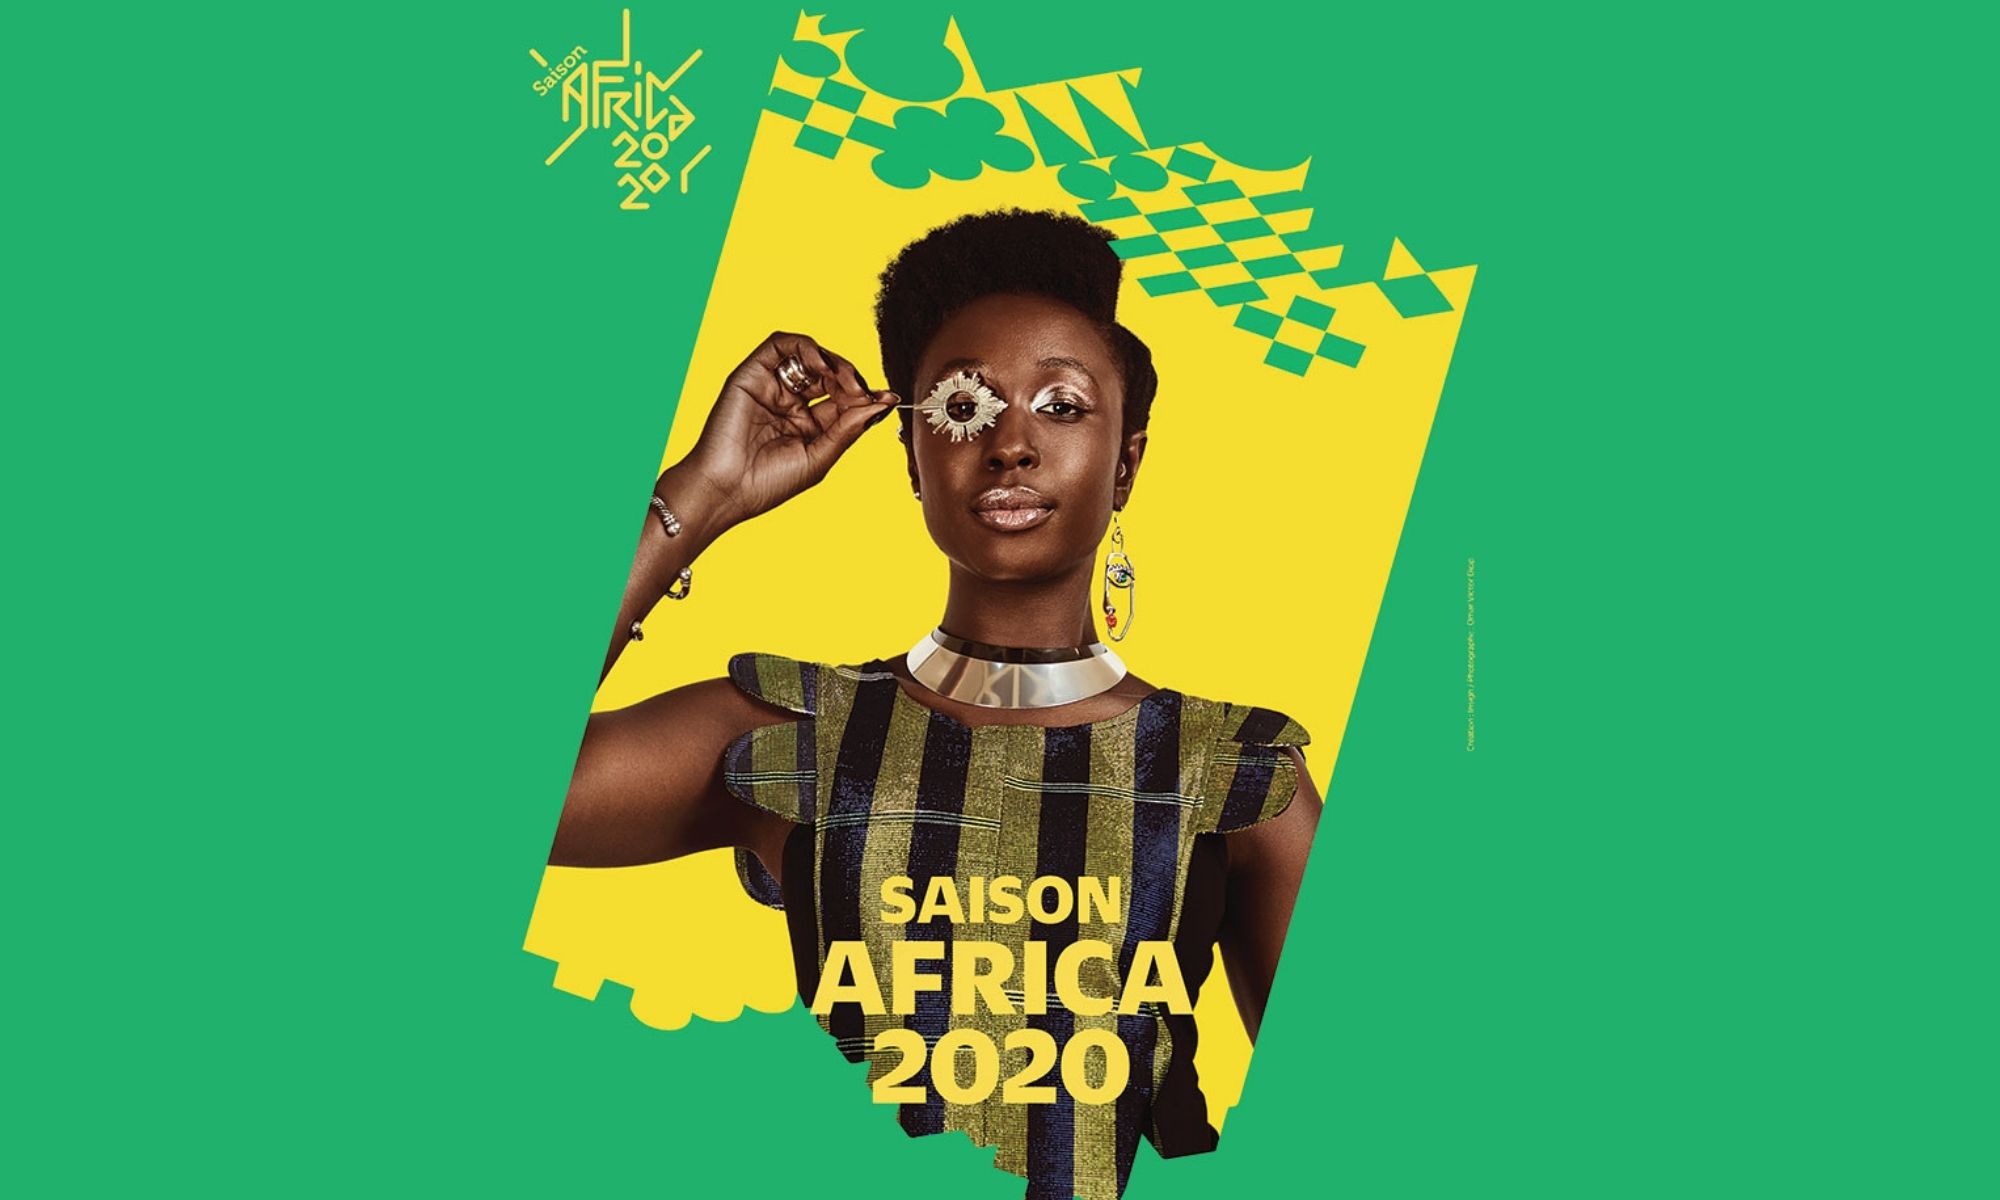 “Ces femmes qui font l’Afrique“, un évènement en ligne qui aura lieu le 8 mars dans le cadre de la Saison Africa